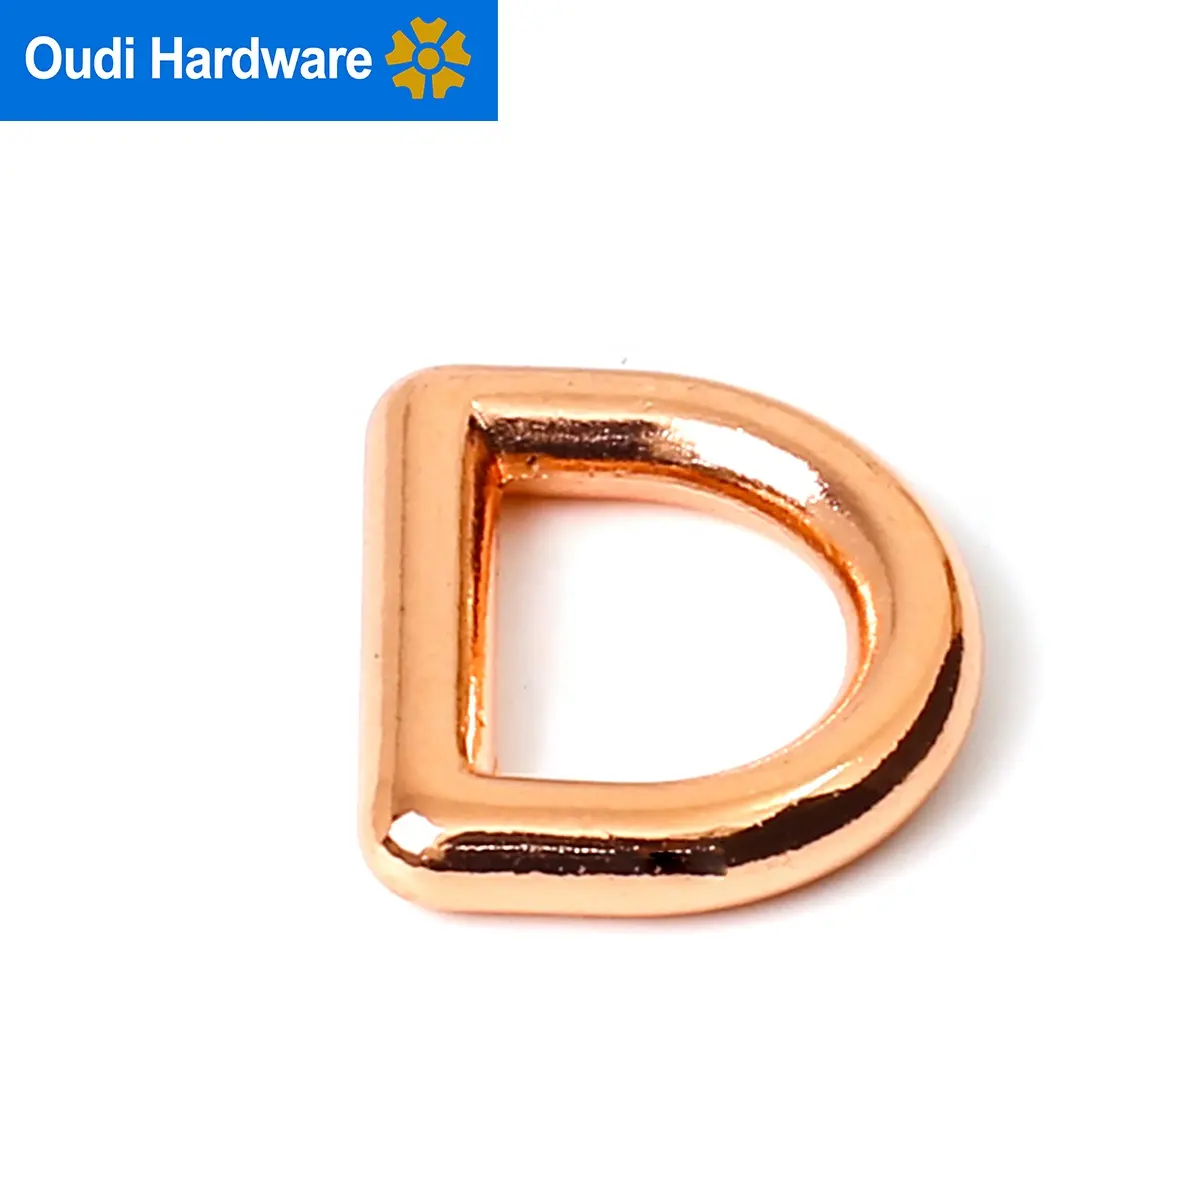 Benutzer definierte D-Ring Hardware Zink legierung Metall D-Ring für Hunde halsband Roségold D-Ring Schnalle 1 Zoll Größe